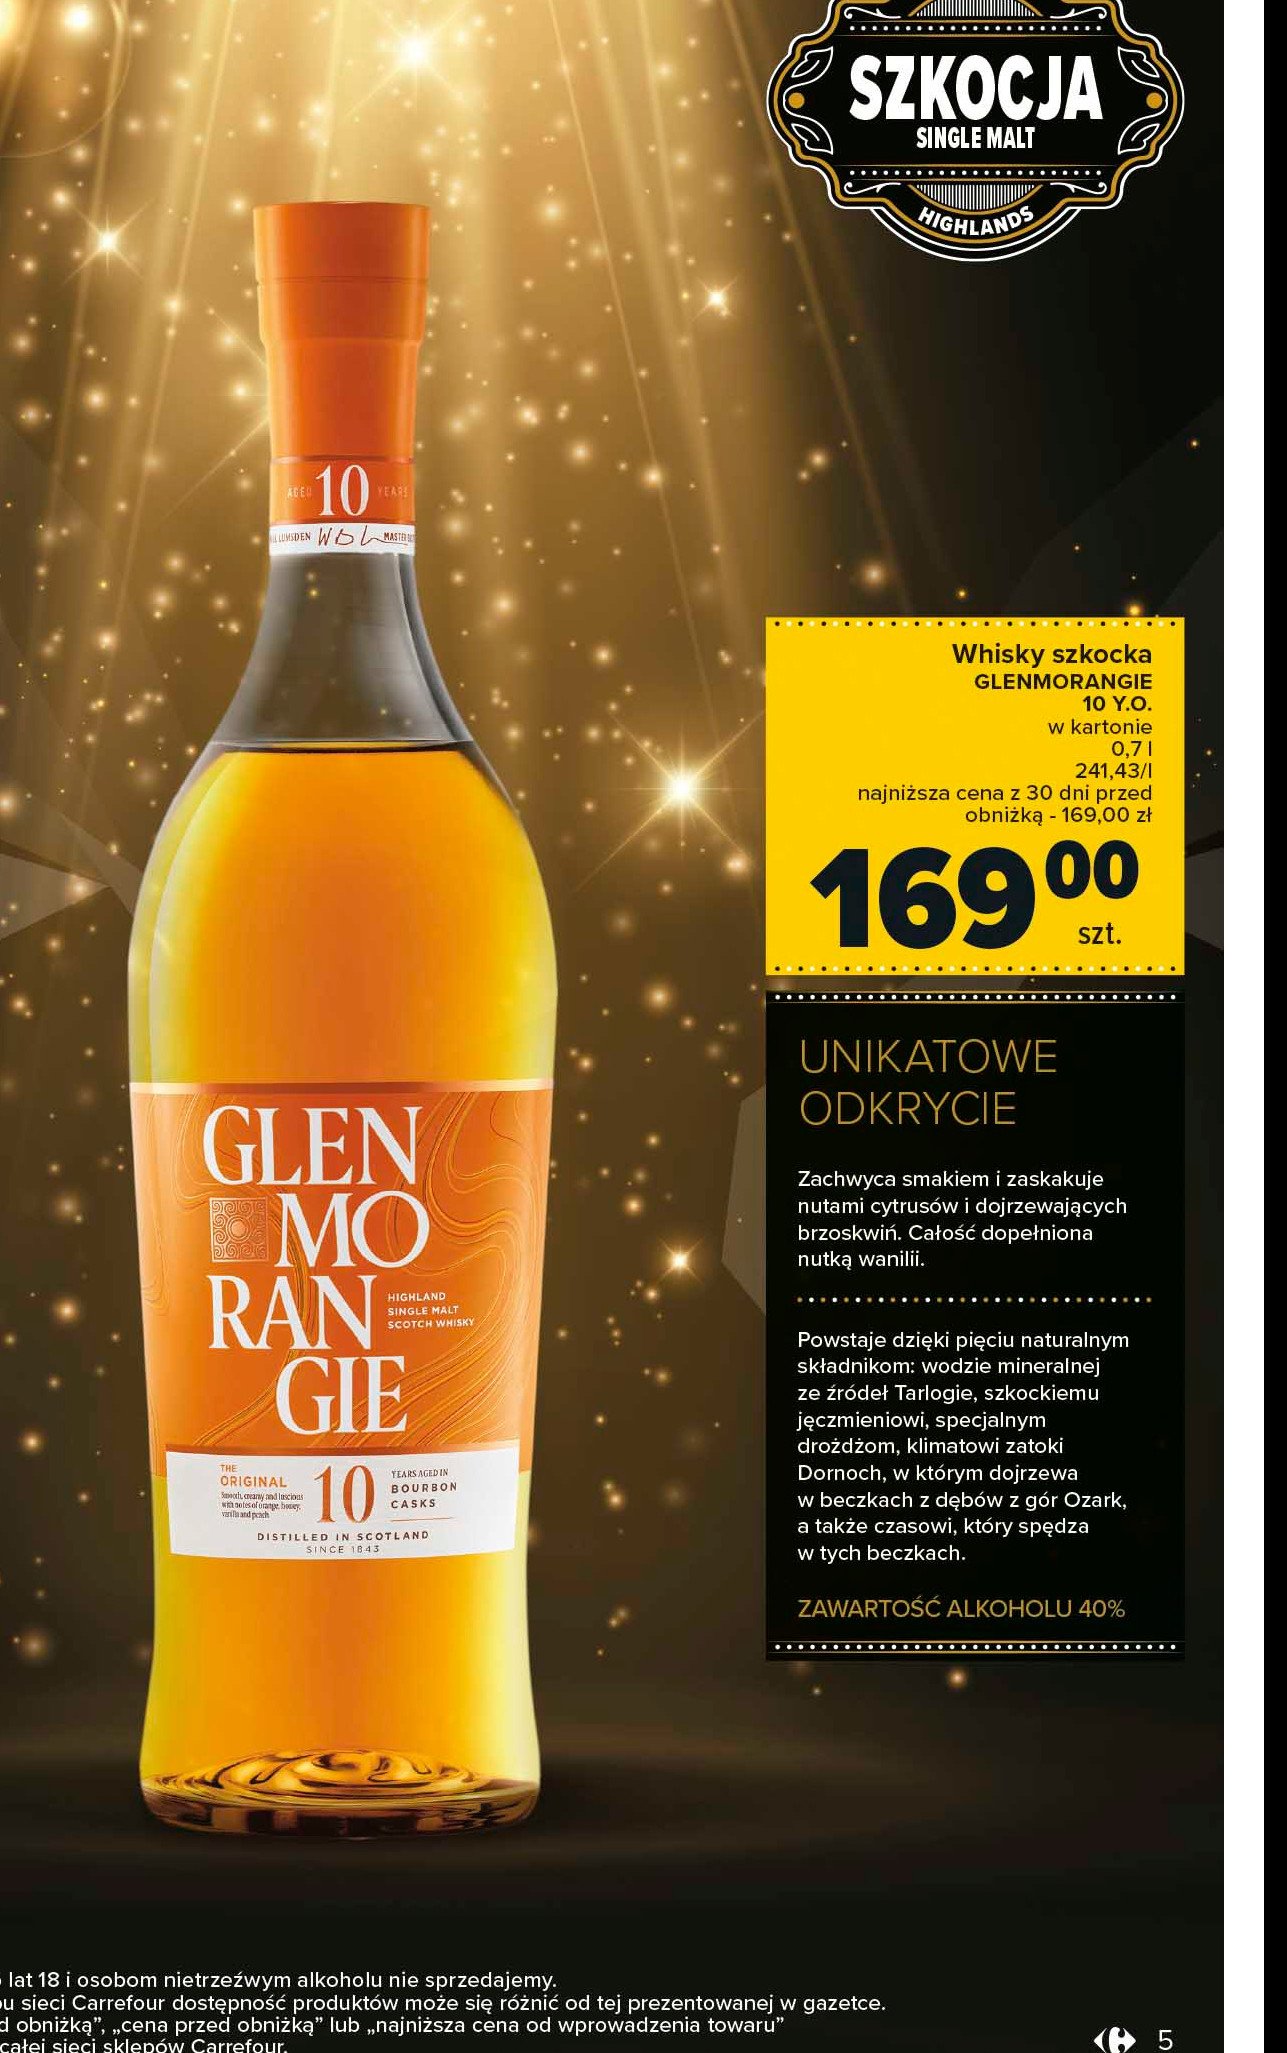 Whisky GLENMORANGIE 10 YO promocja